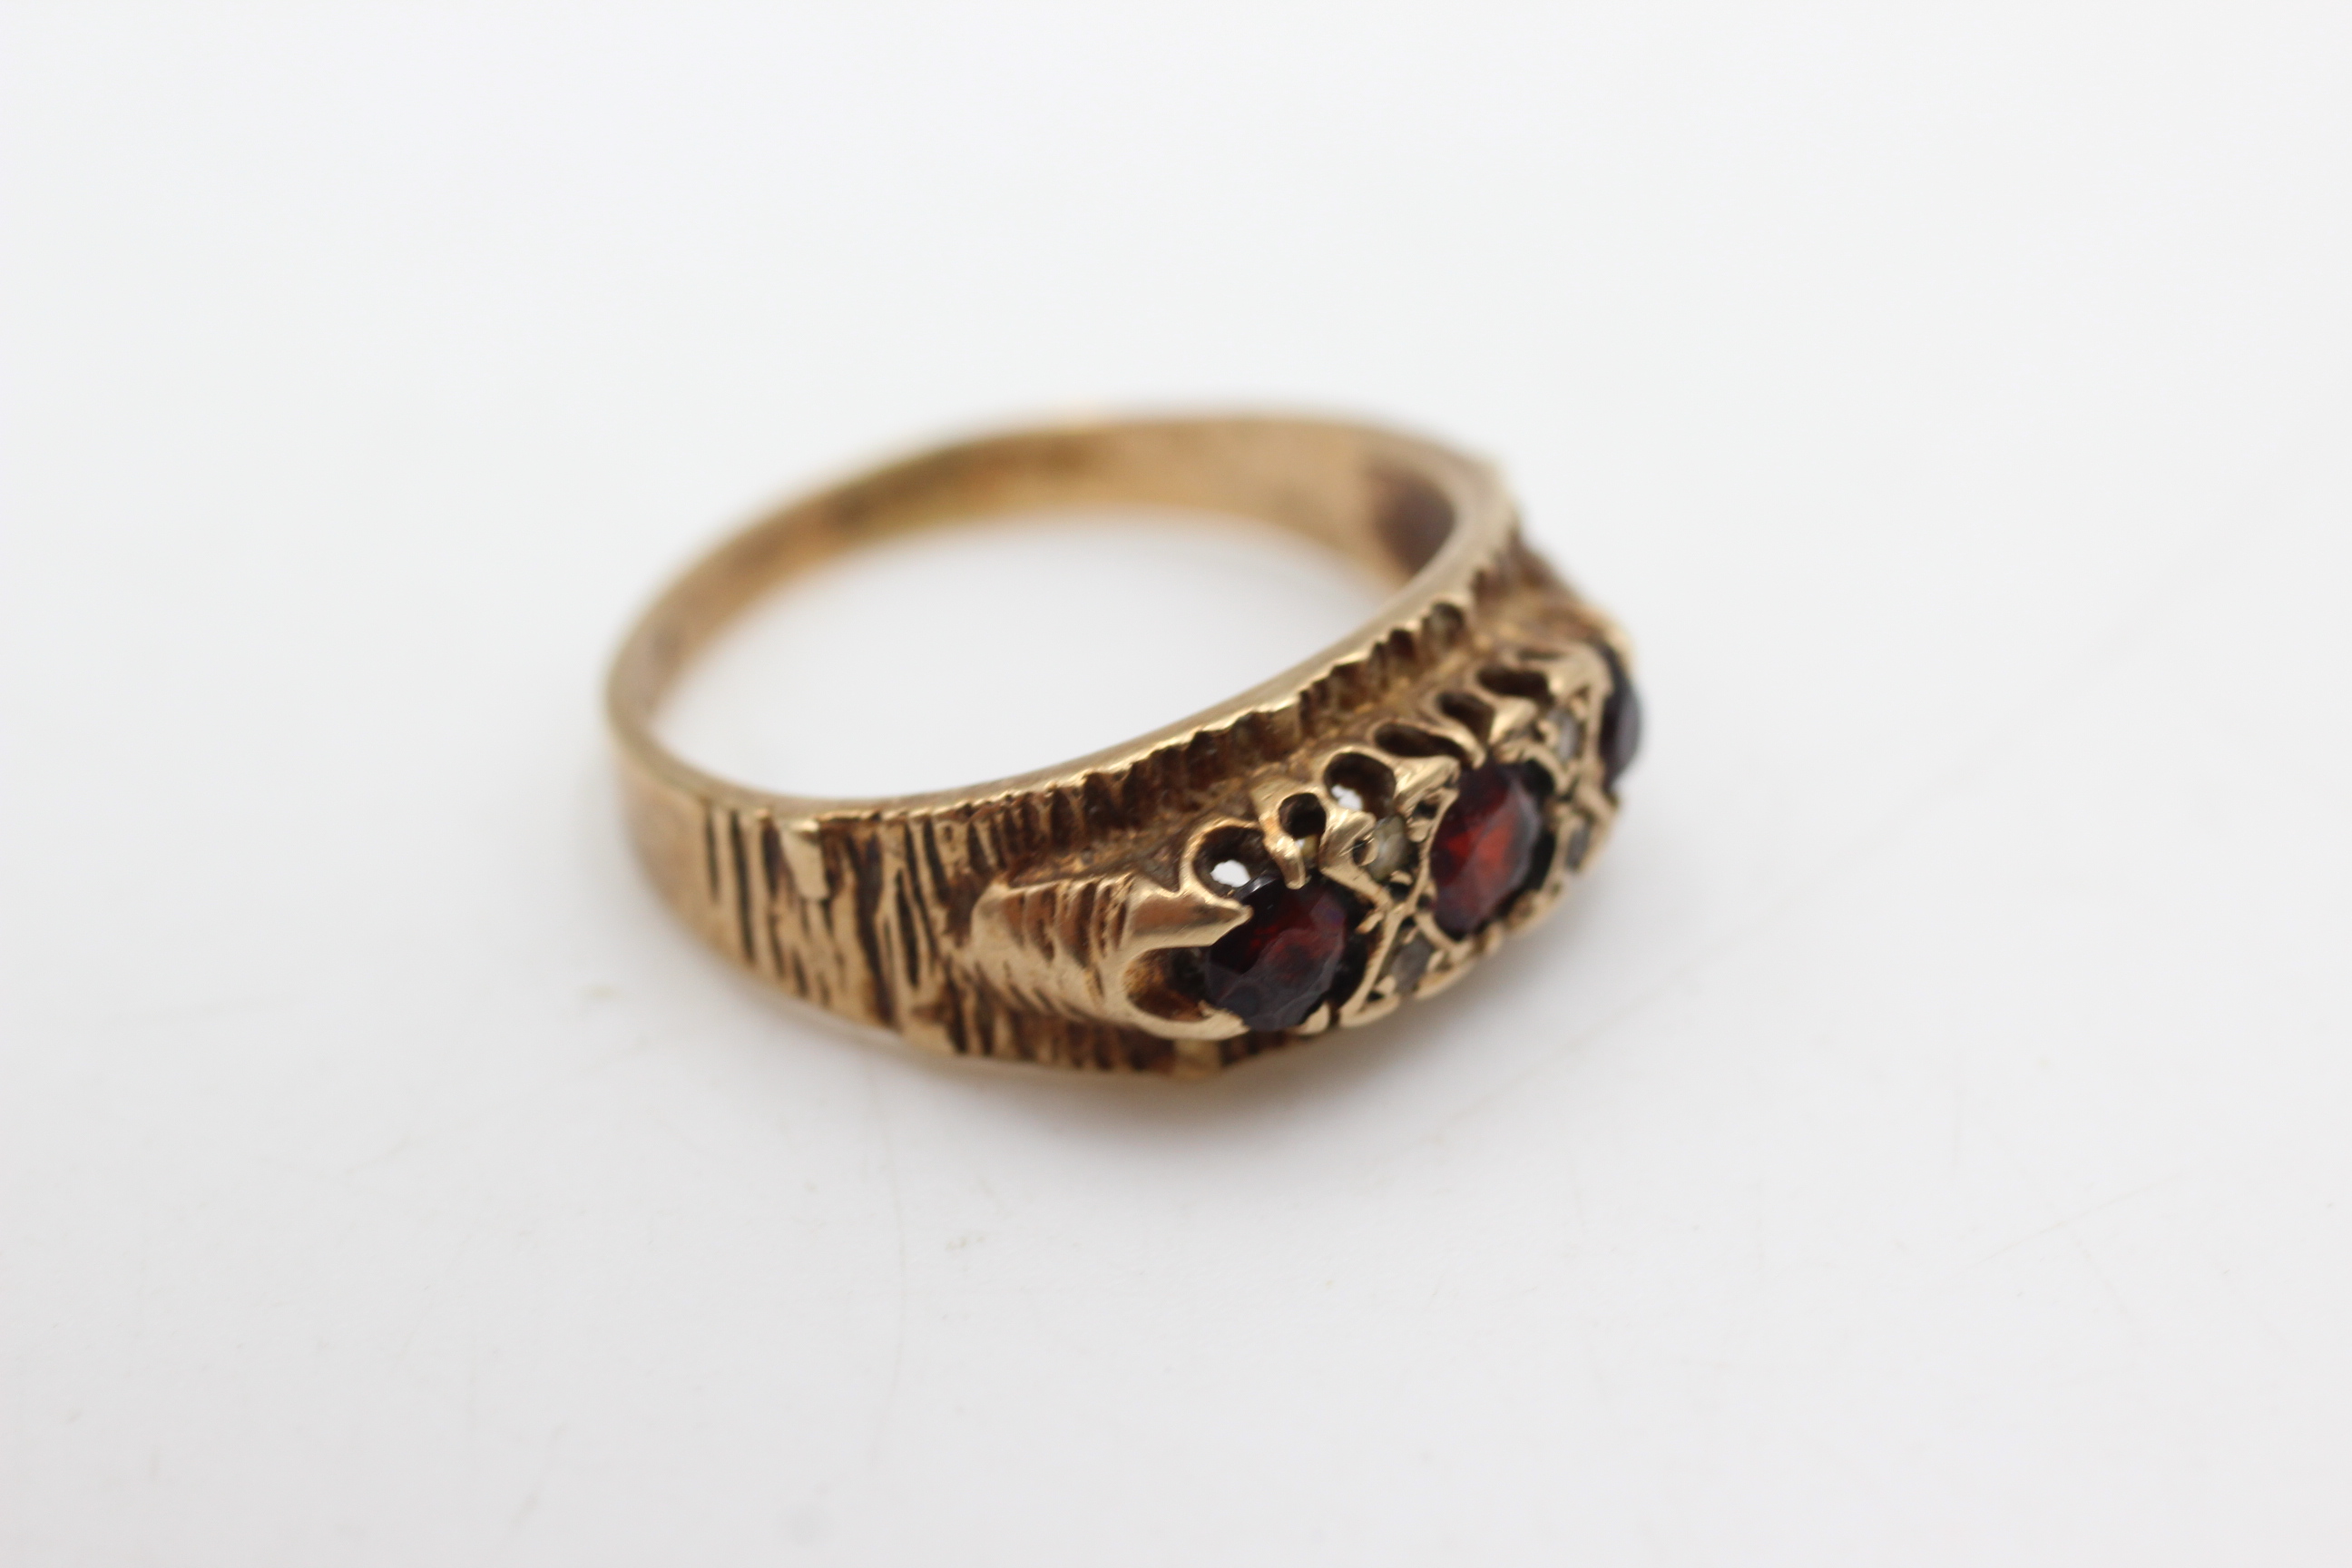 9ct gold garnet & clear gemstone etched flush set ring (4.1g) - Image 2 of 4